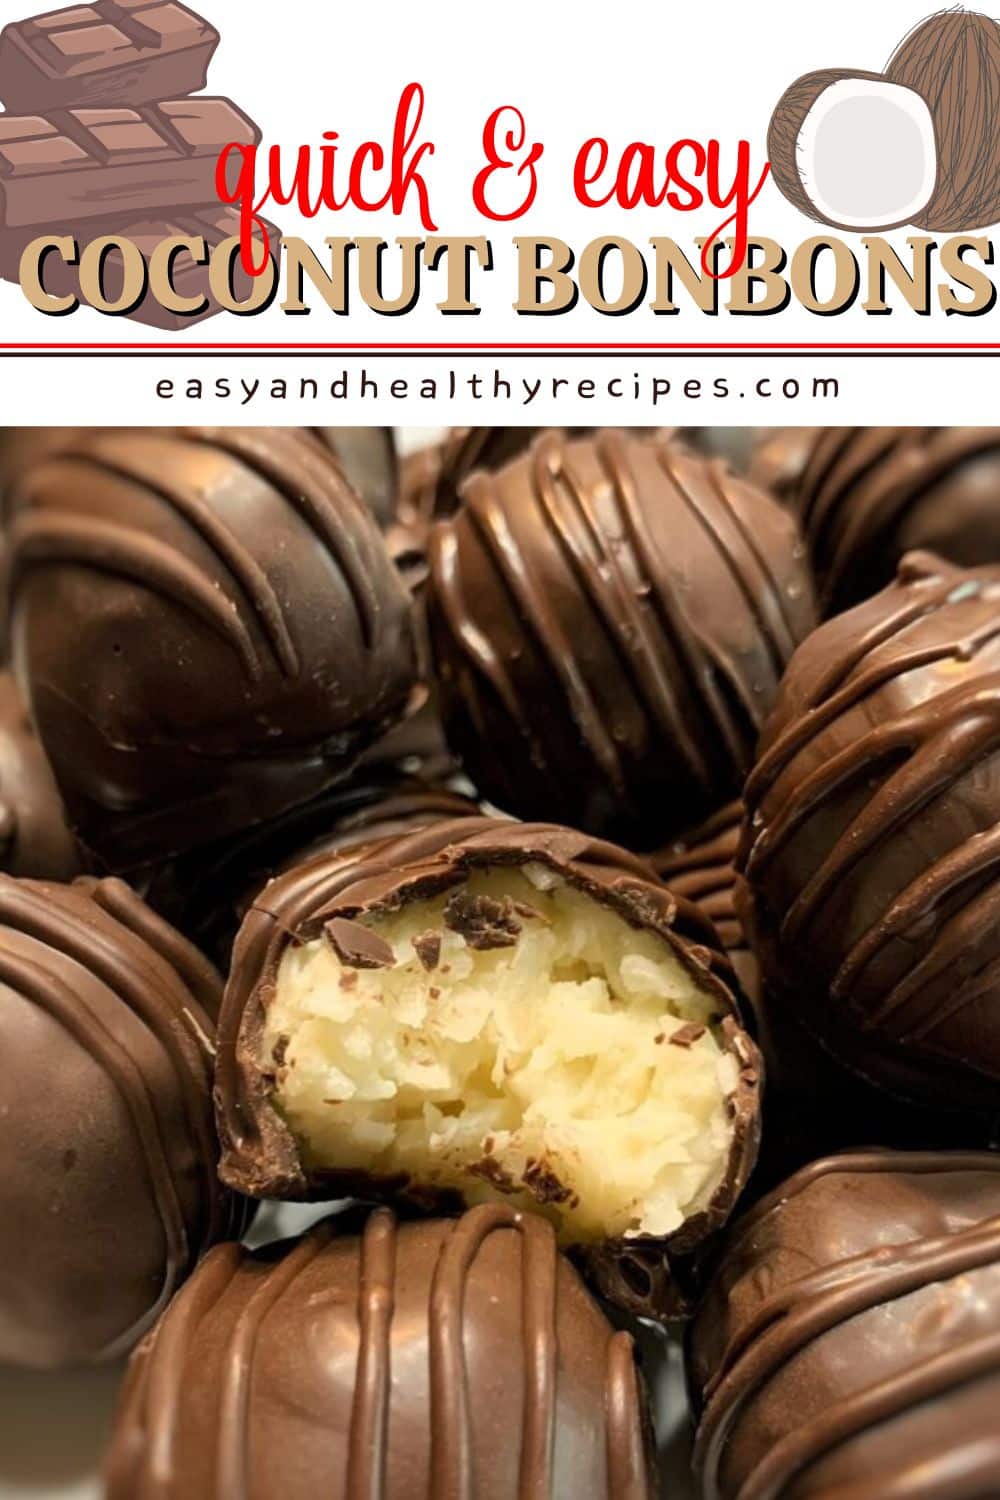 Coconut Bonbons